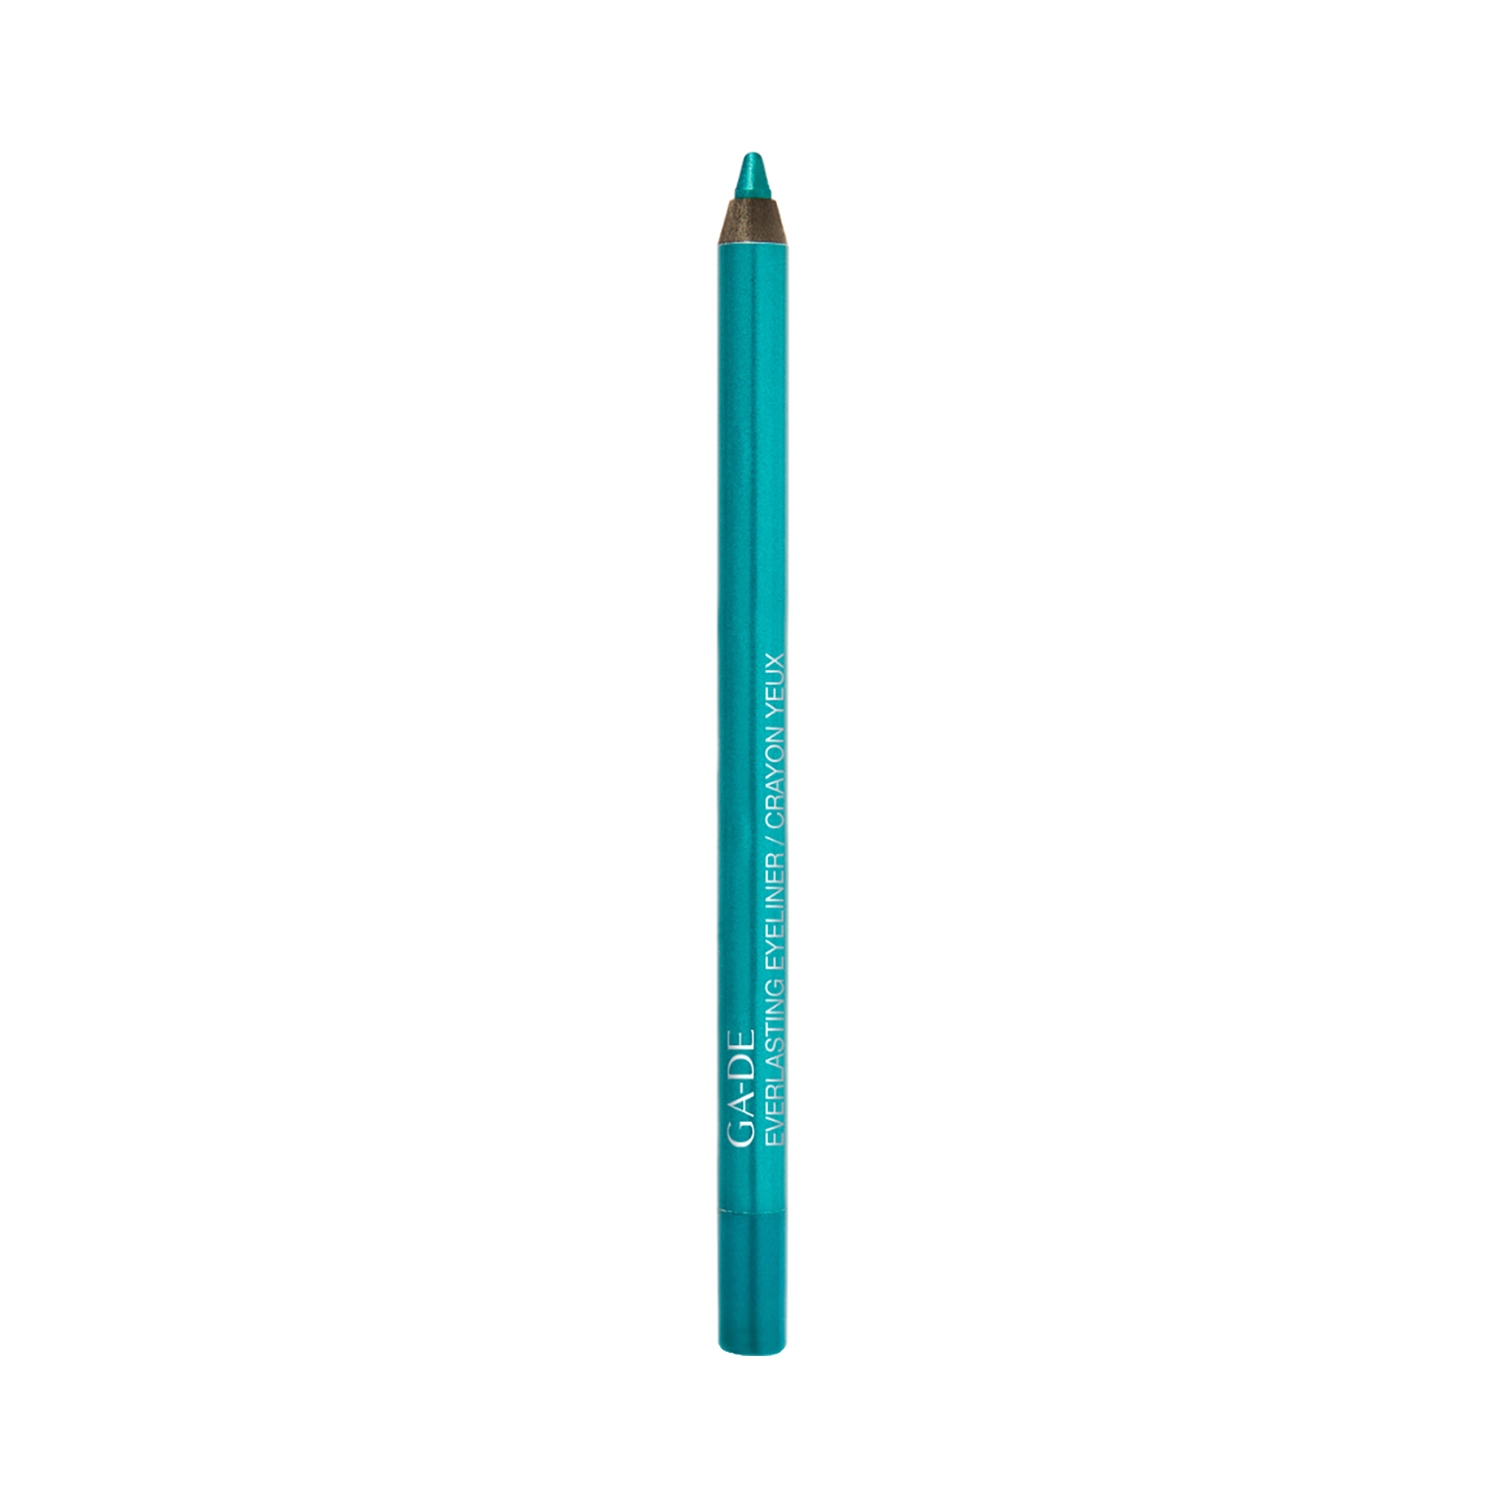 GA-DE Everlasting Eyeliner - 305 Intense Turquoise (1.2g)